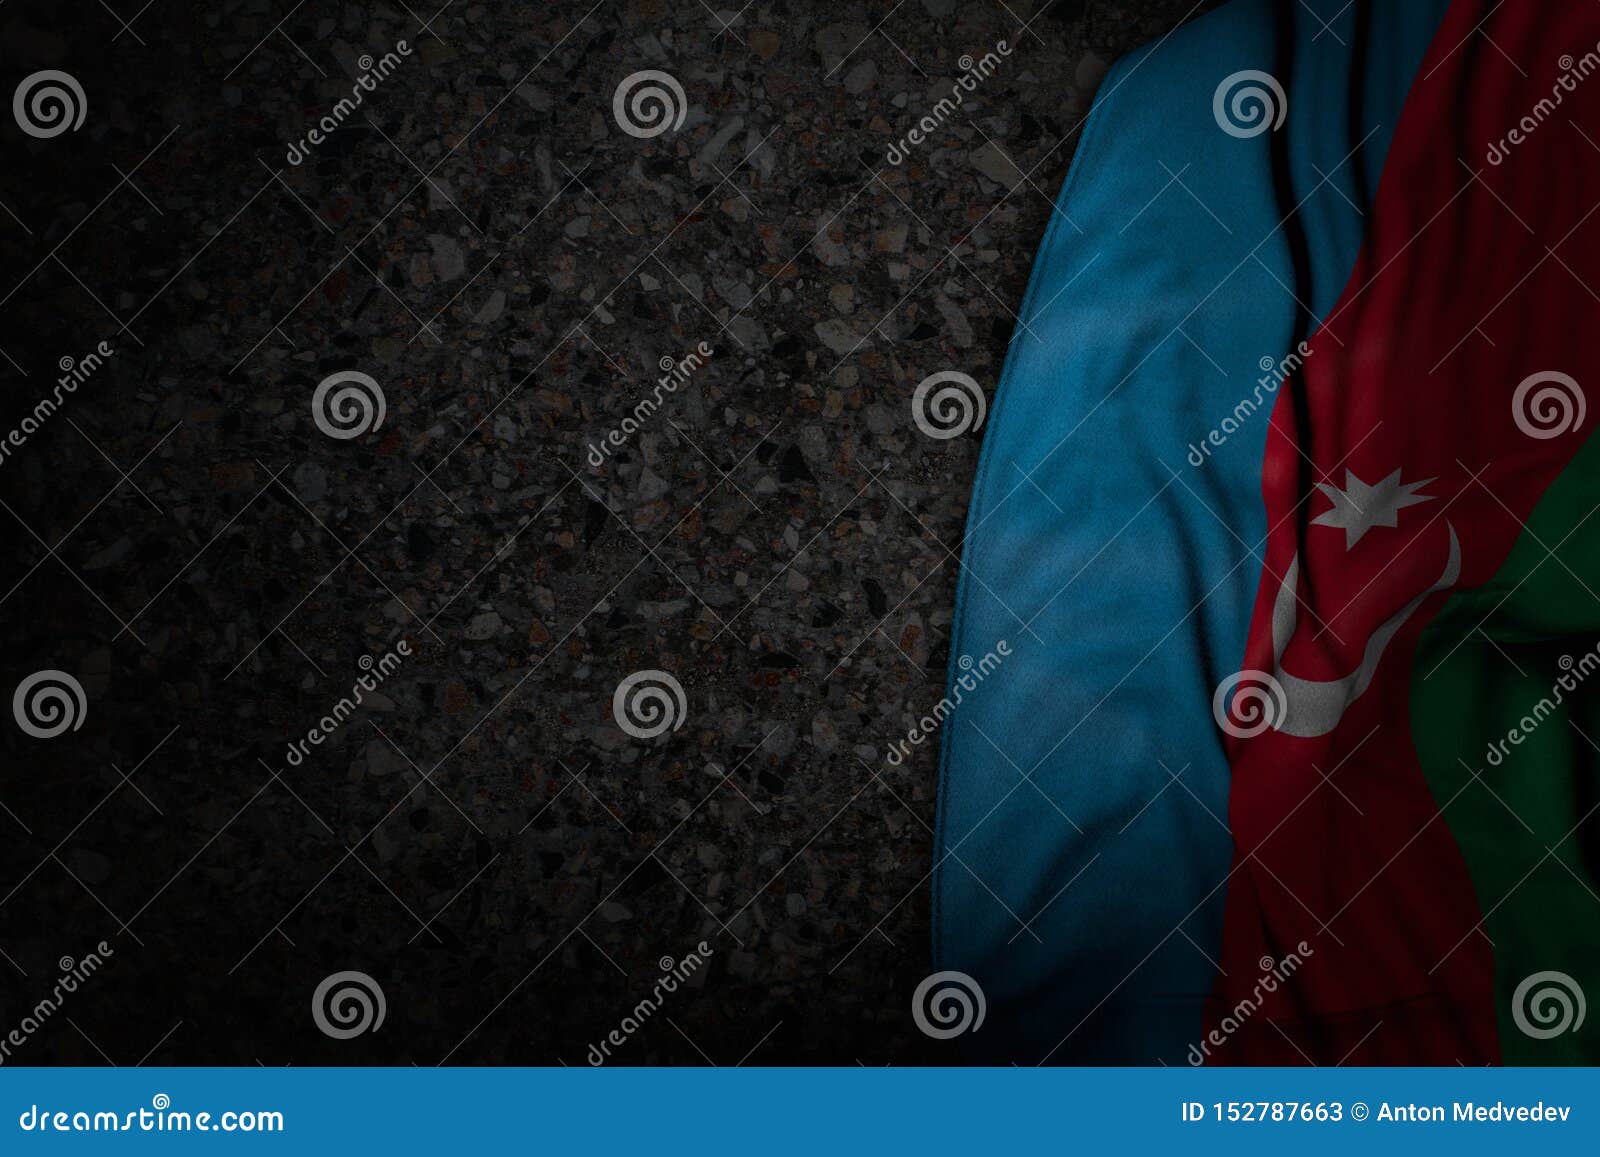 Флаг Азербайджана Фото В Высоком Качестве Красивые